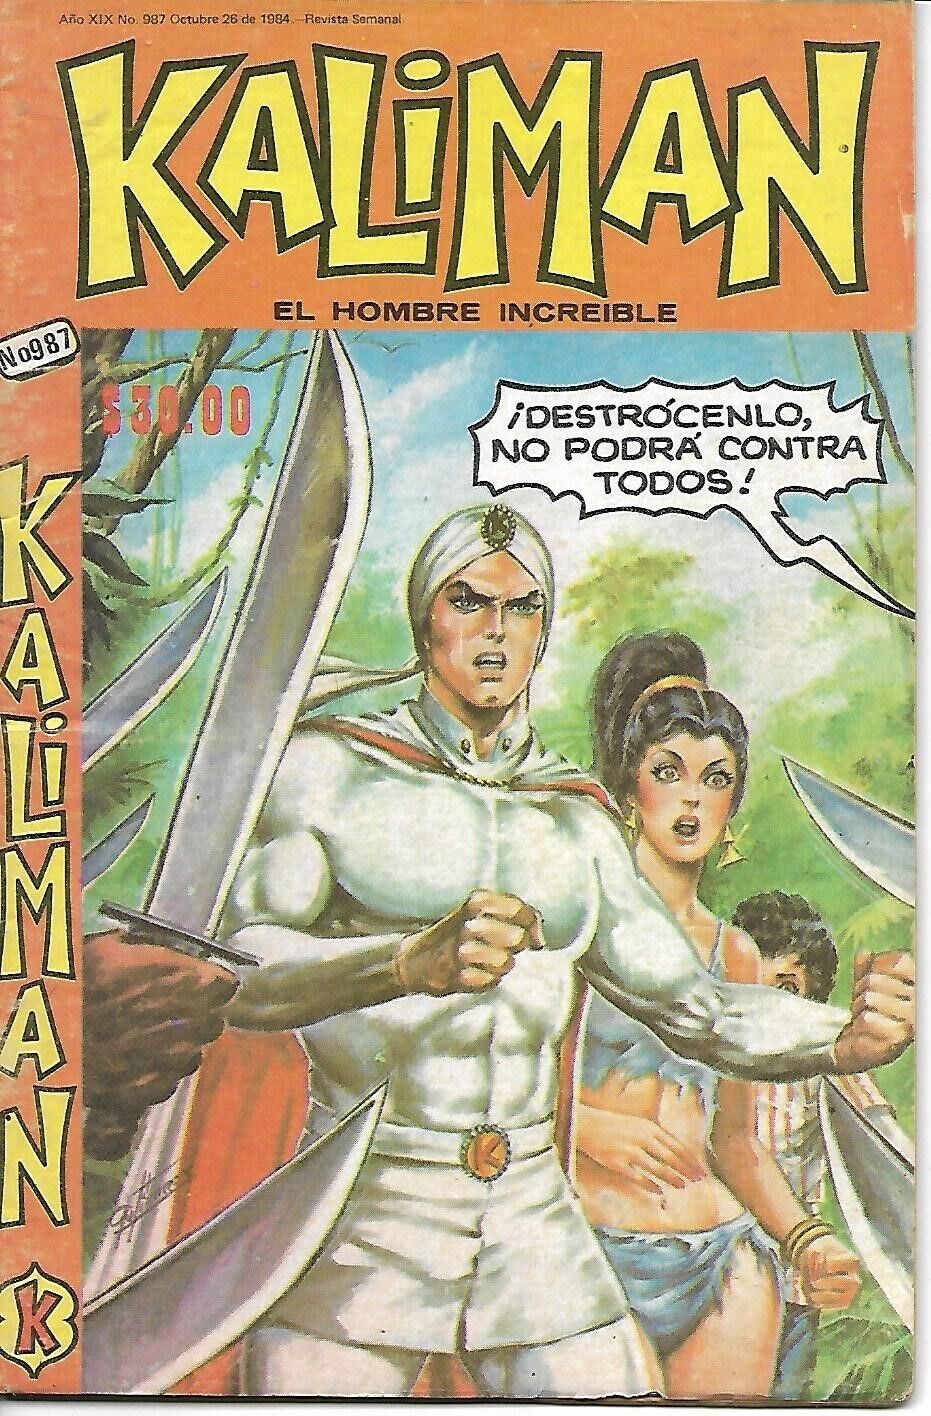 Kaliman El Hombre Increible #987 - Octubre 26, 1984 - Mexico